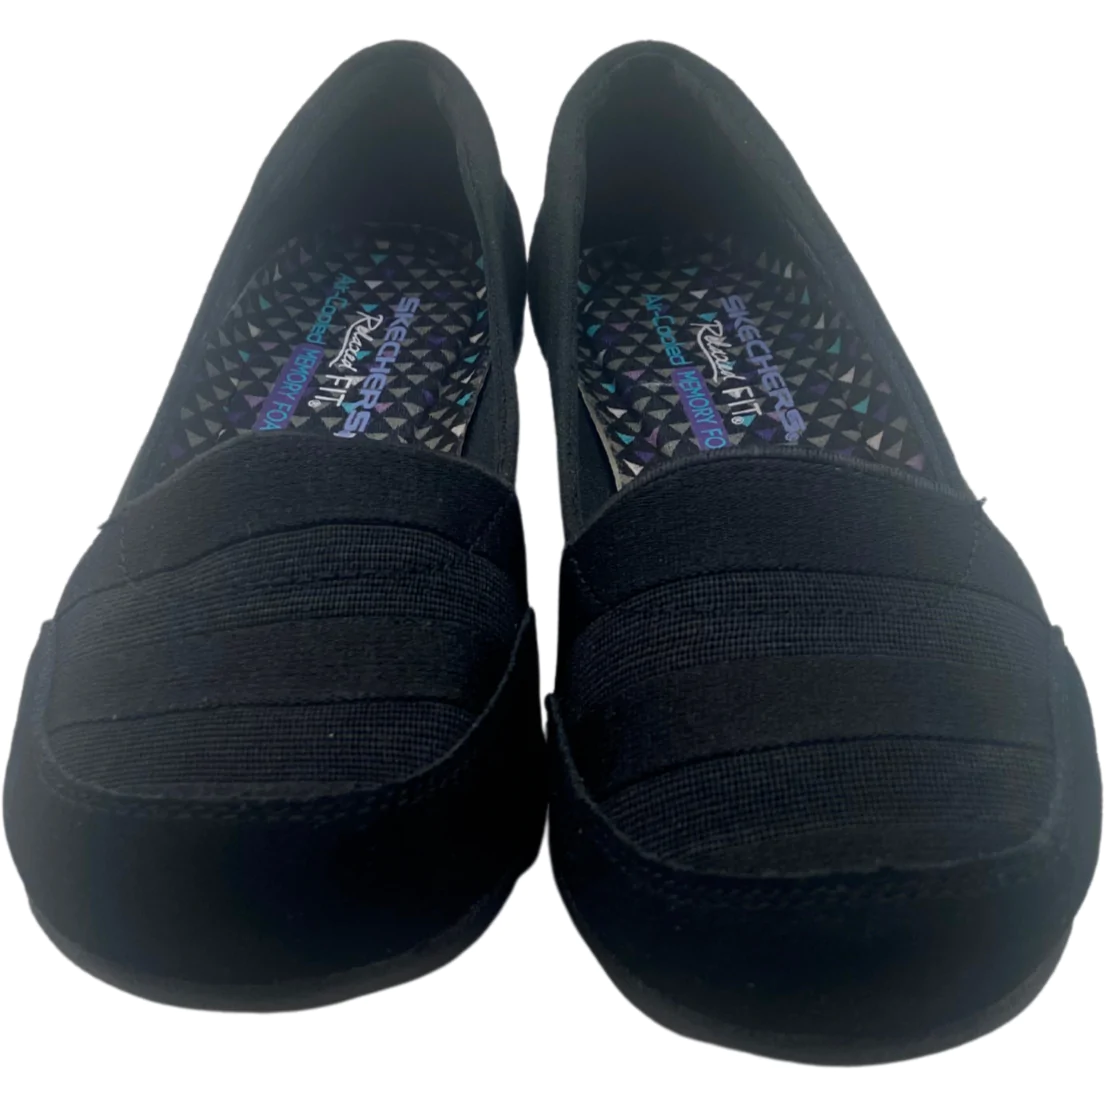 Skechers: Women's Shoe / Relaxed Fit / Slip On / Memory Foam / Black / Size 6